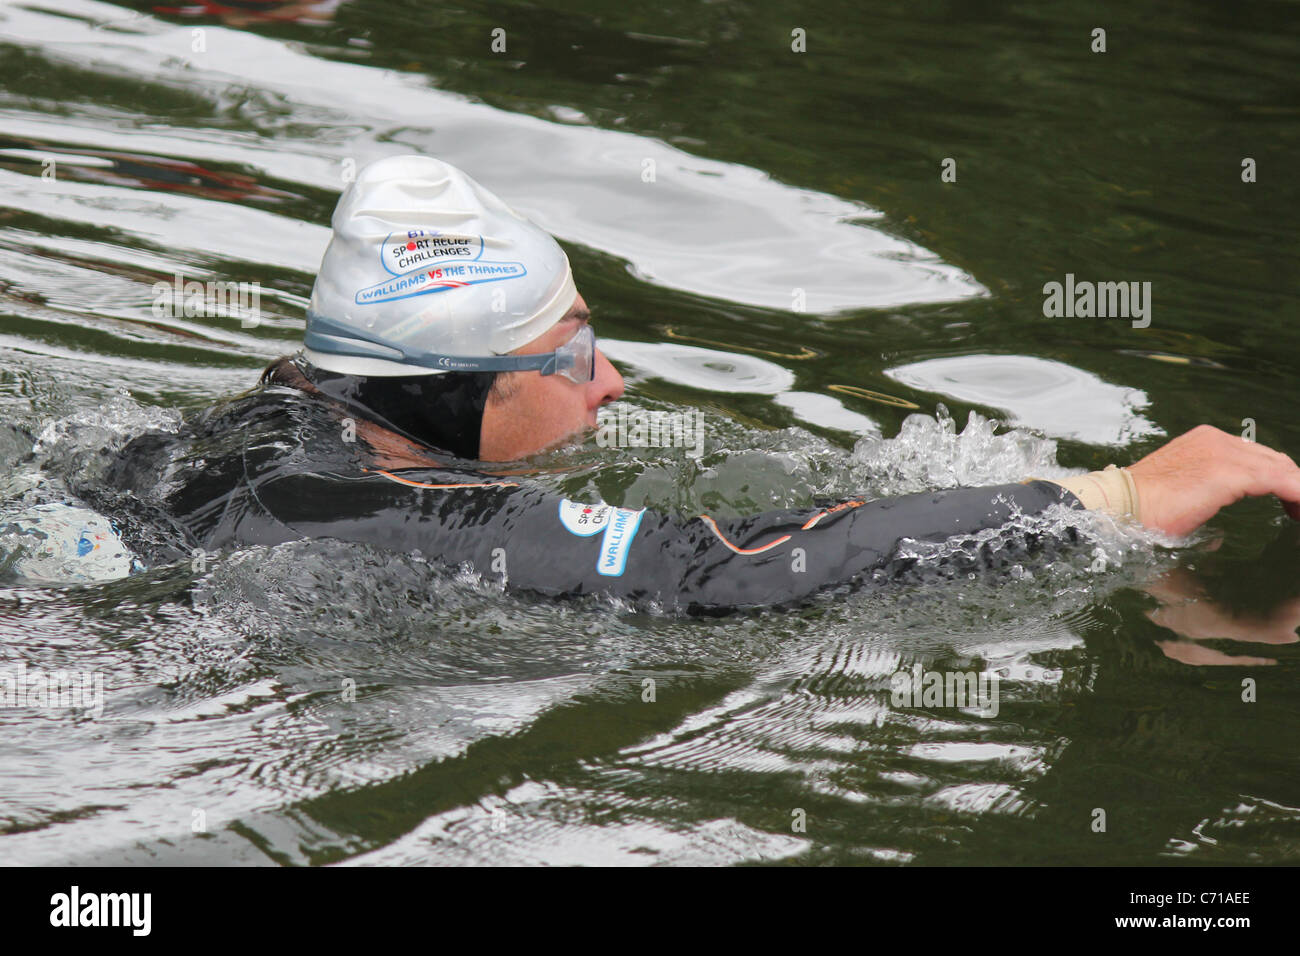 David Walliams nuotare nel Tamigi per Comic Relief 2011 Foto Stock